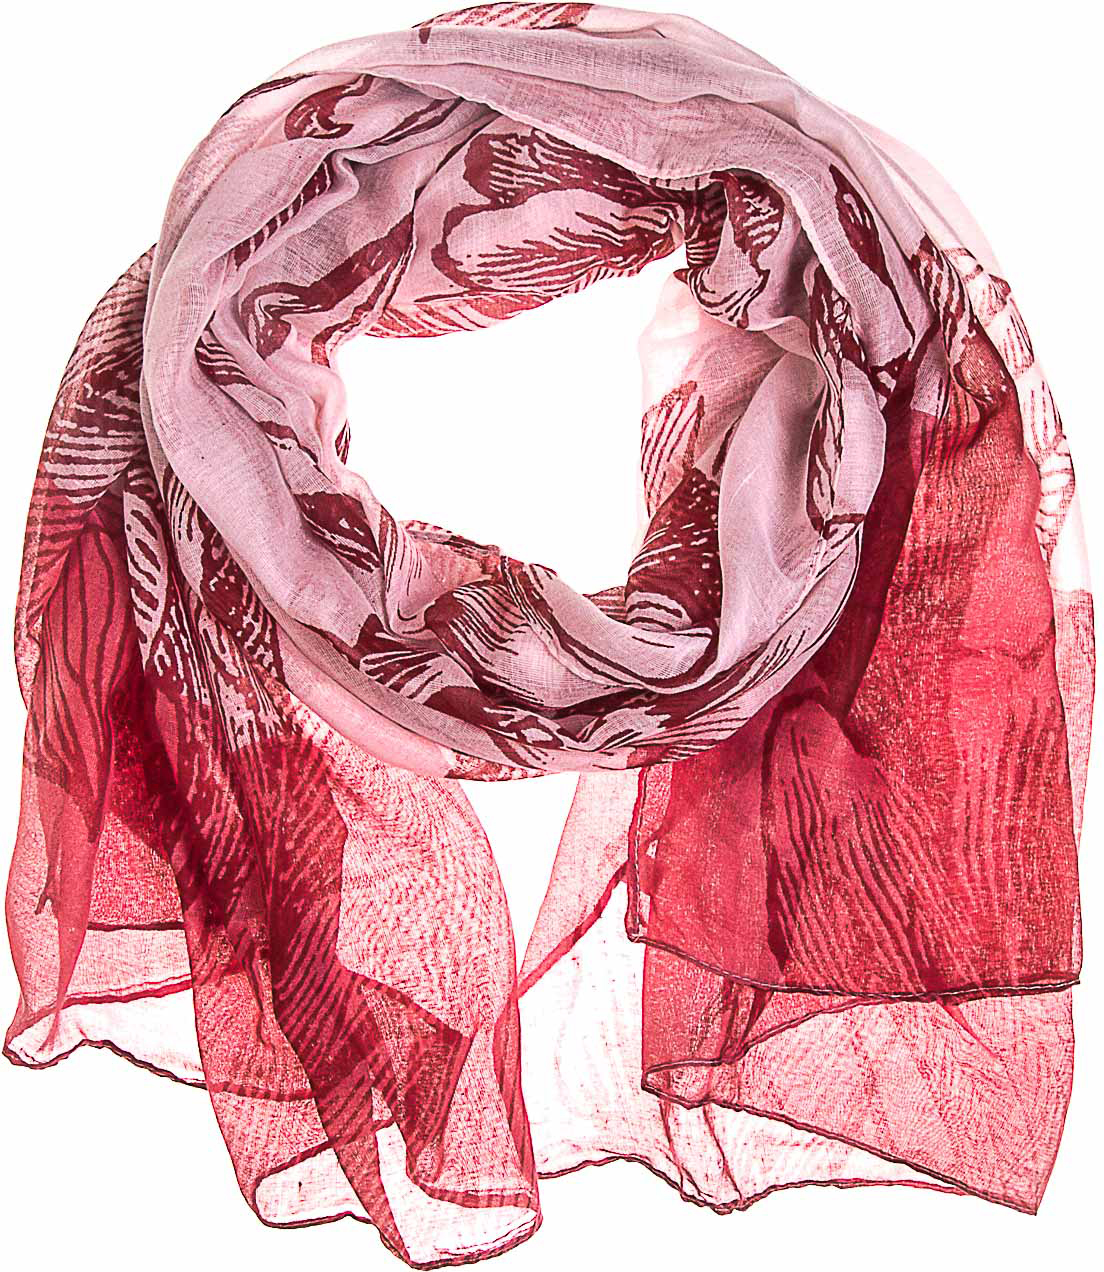 Палантин женский Vittorio Richi, цвет: красный, розовый. K05V7618. Размер 180 х 80 см